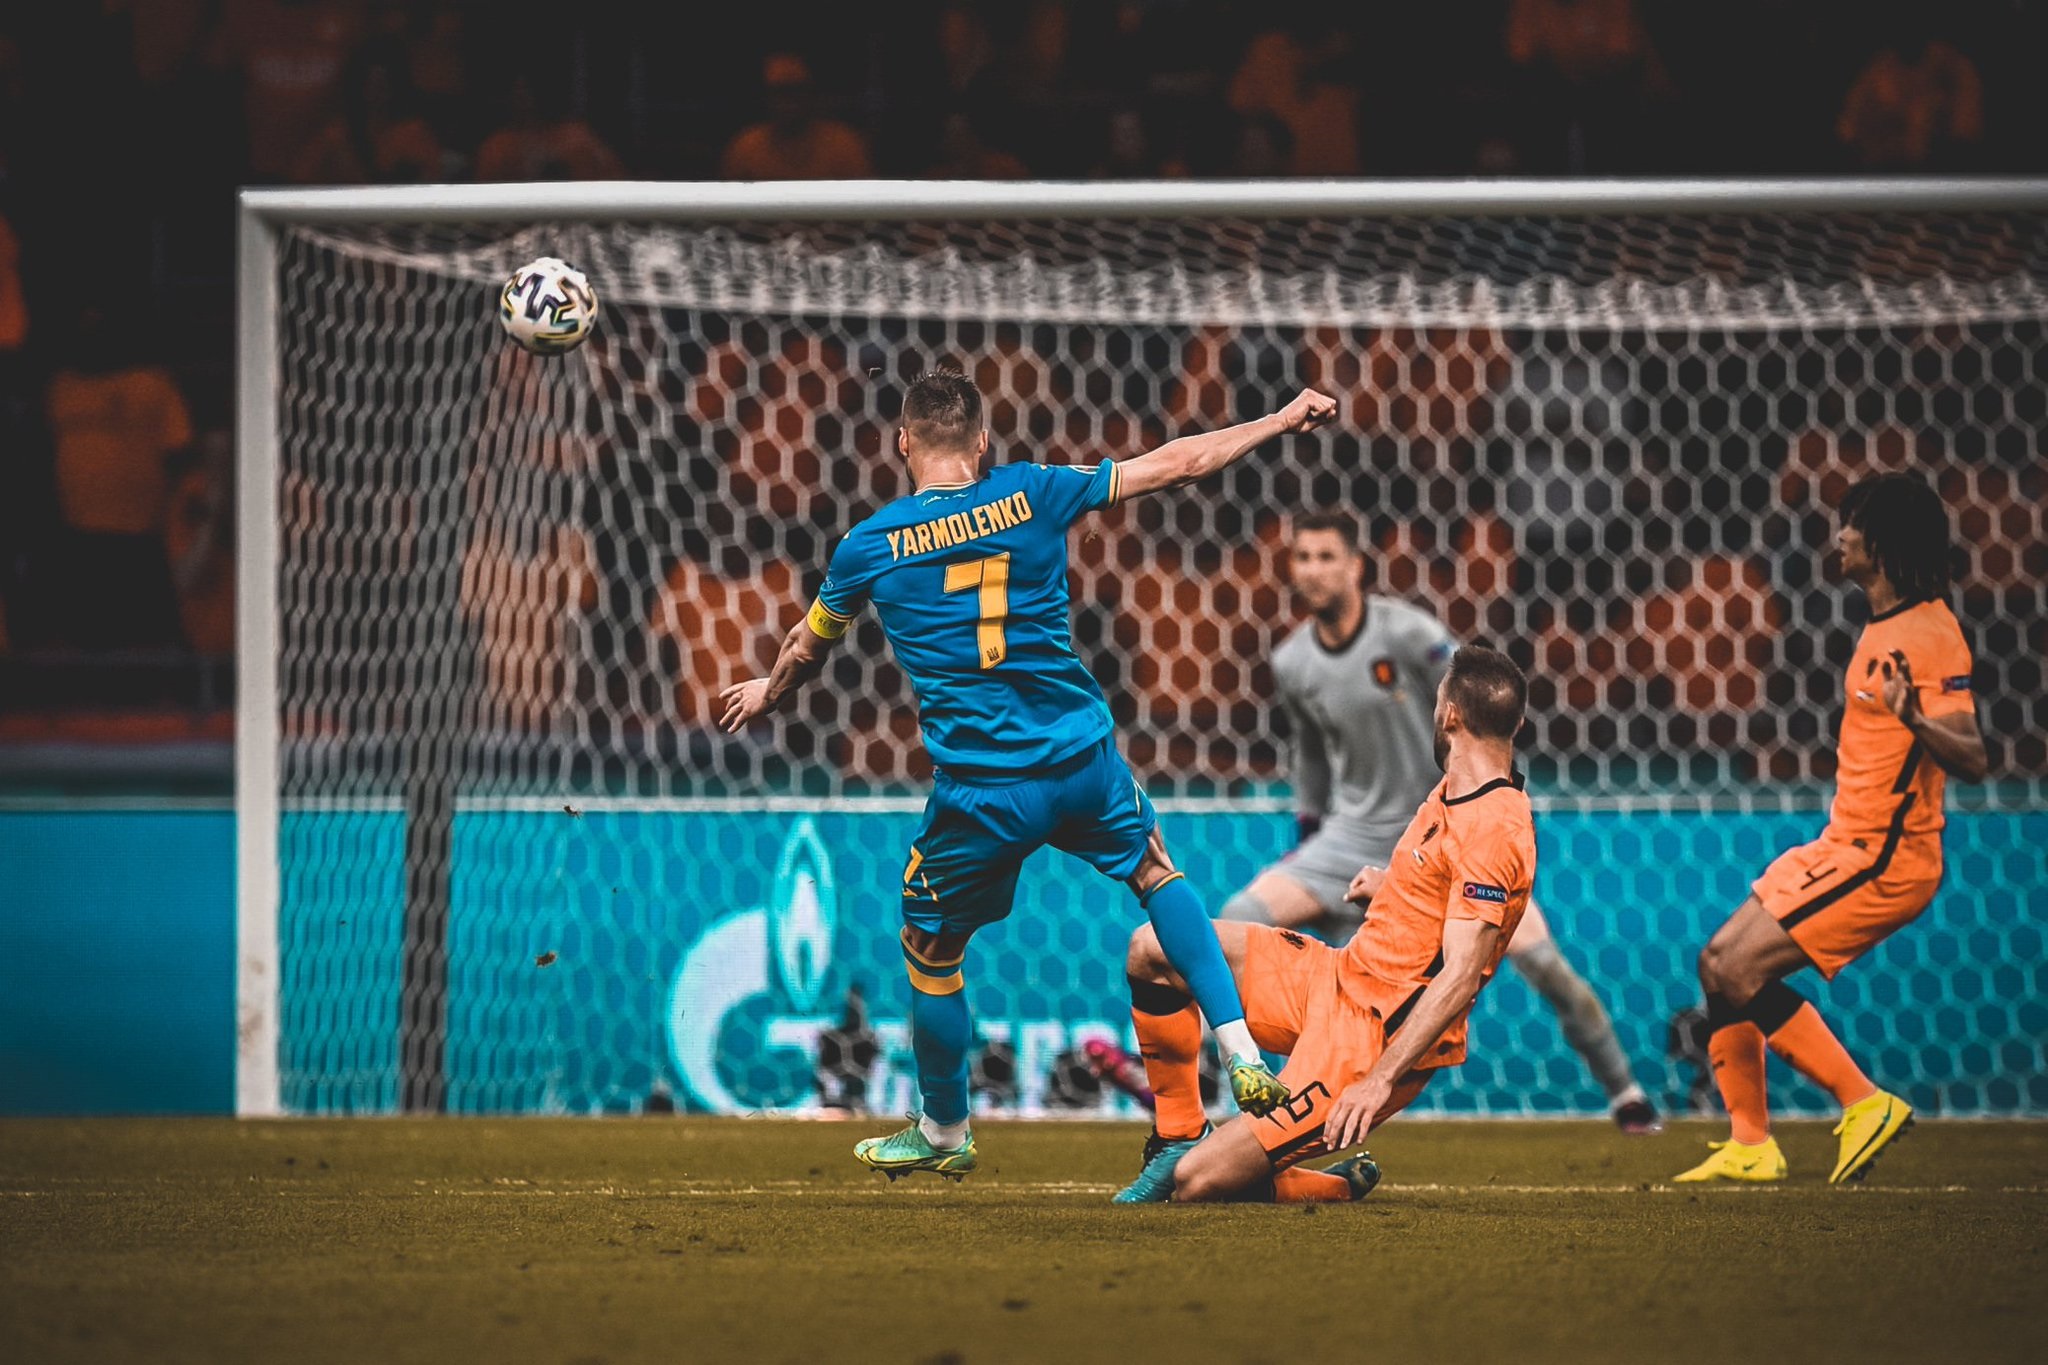 El ucraniano Andriy Yarmolenko anotó ante Países Bajos el que pudiera ser el gol del torneo.